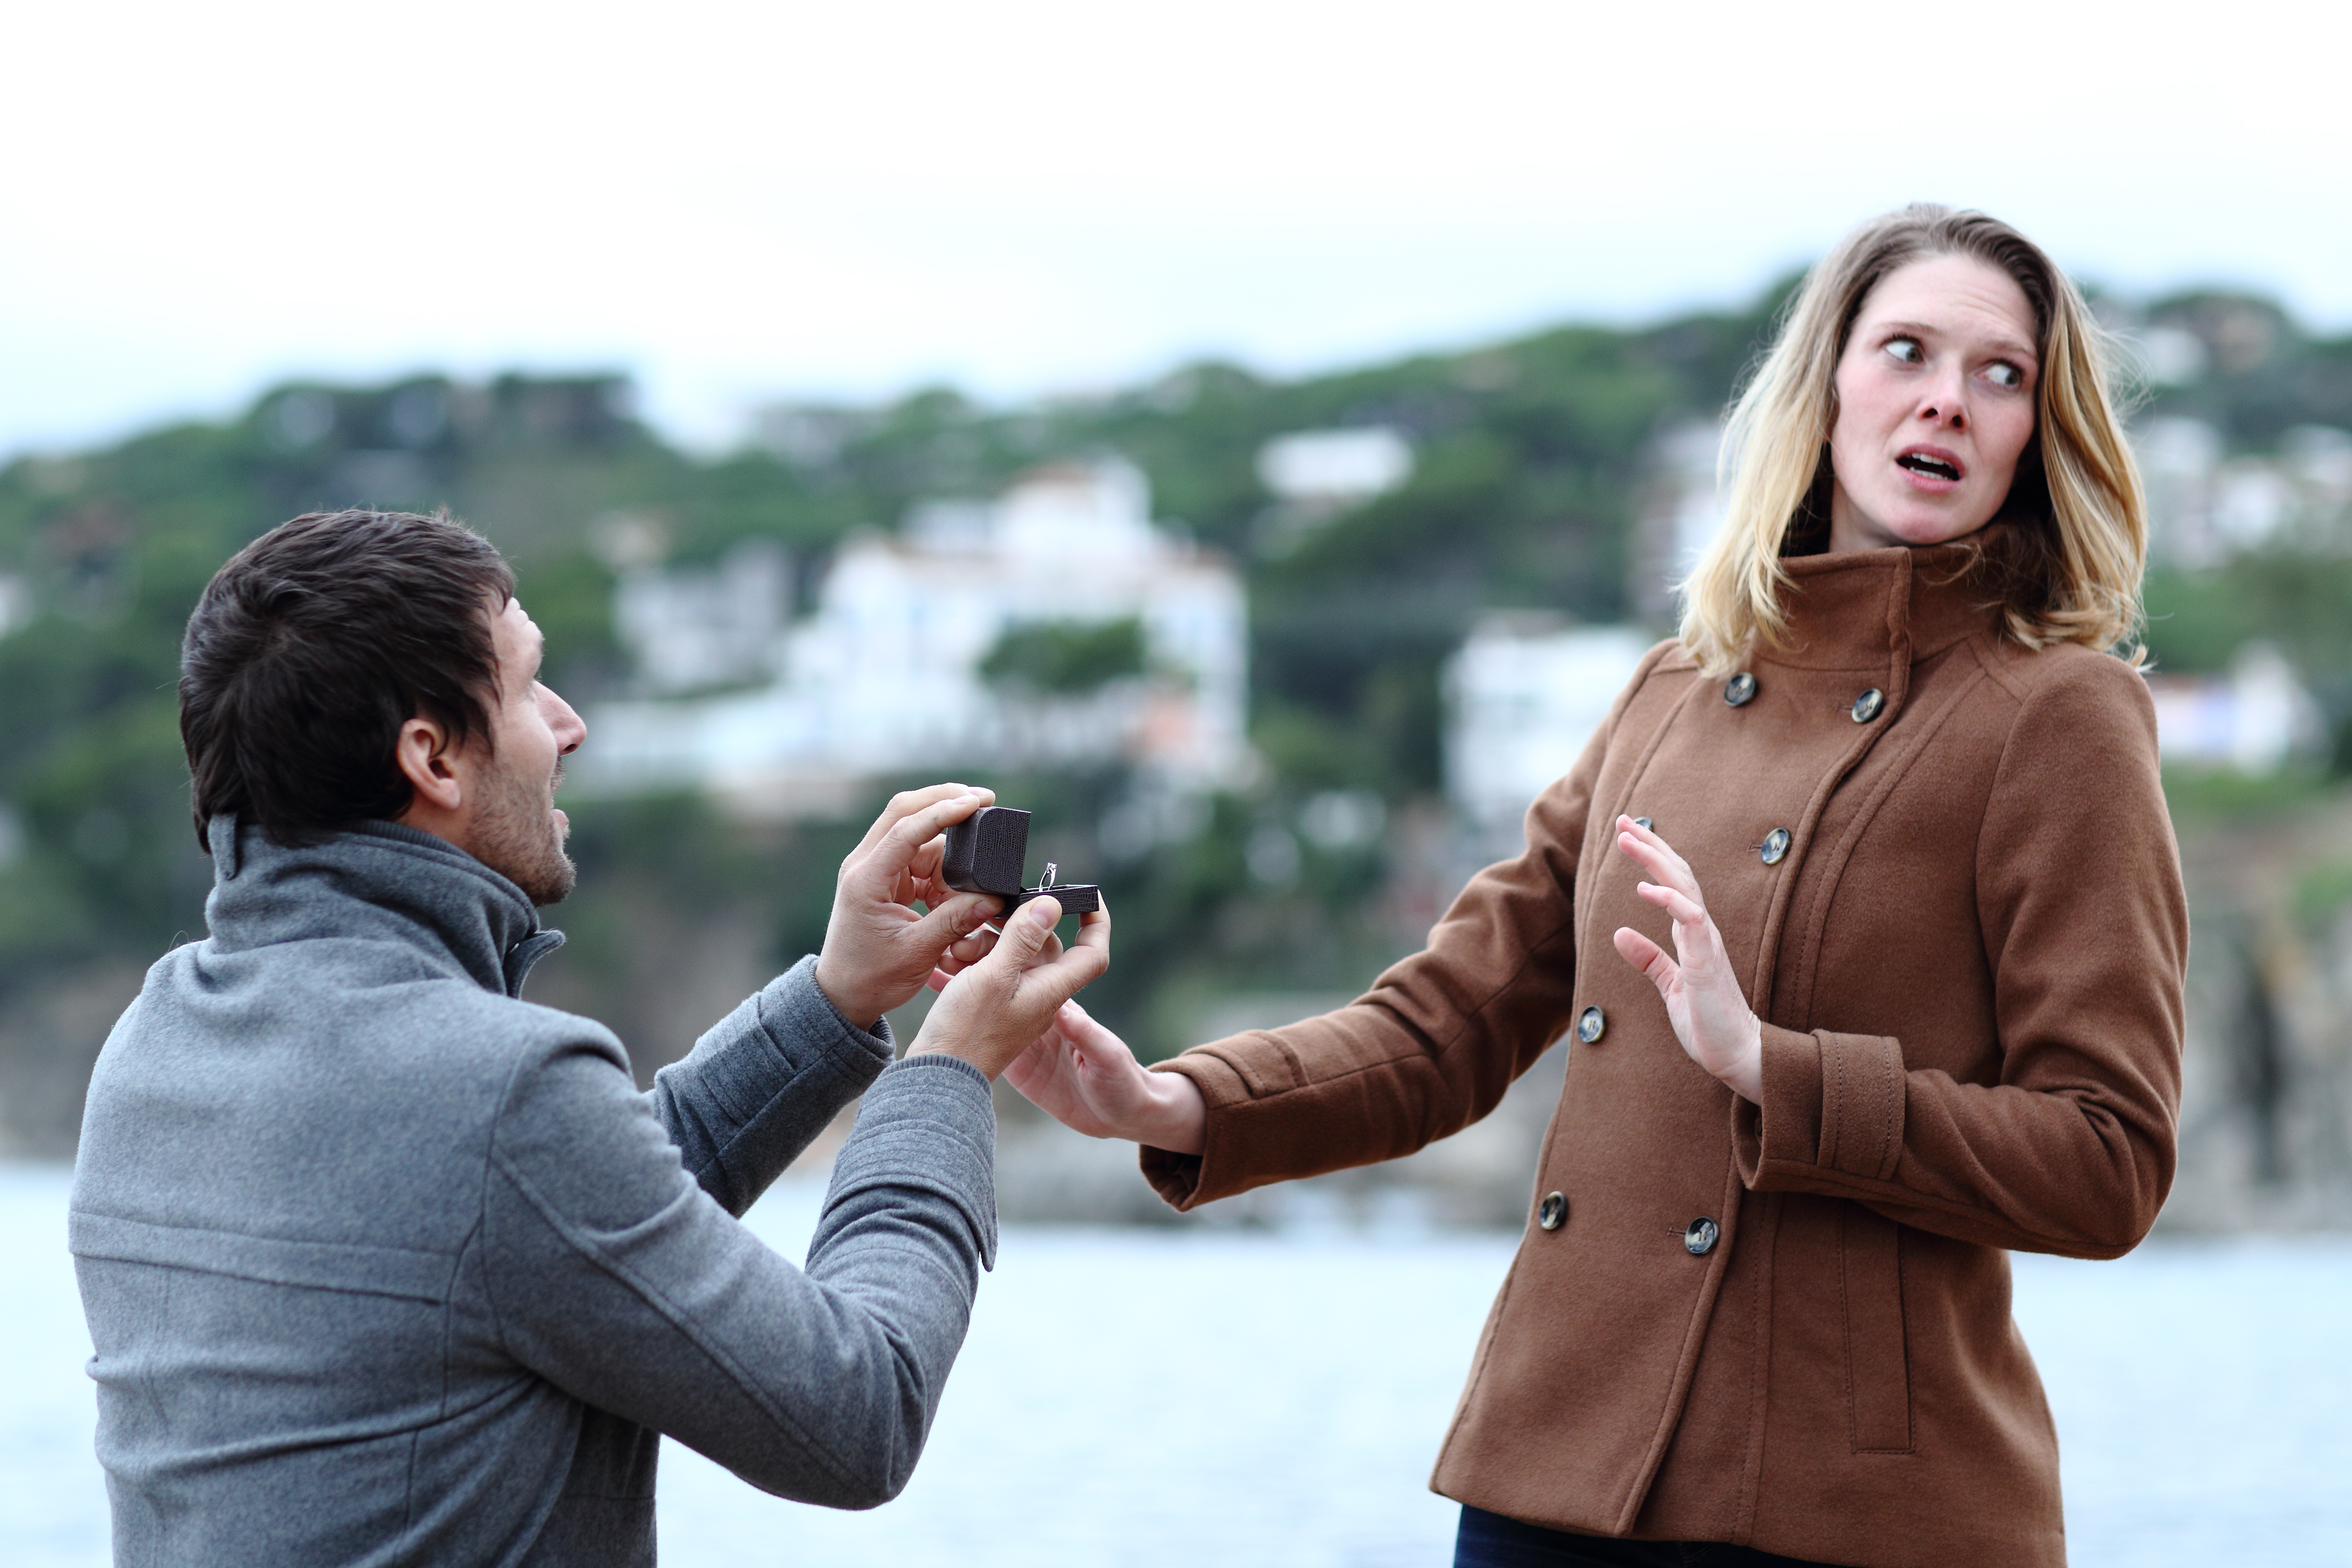 Man proposing to woman | Source: Shutterstock